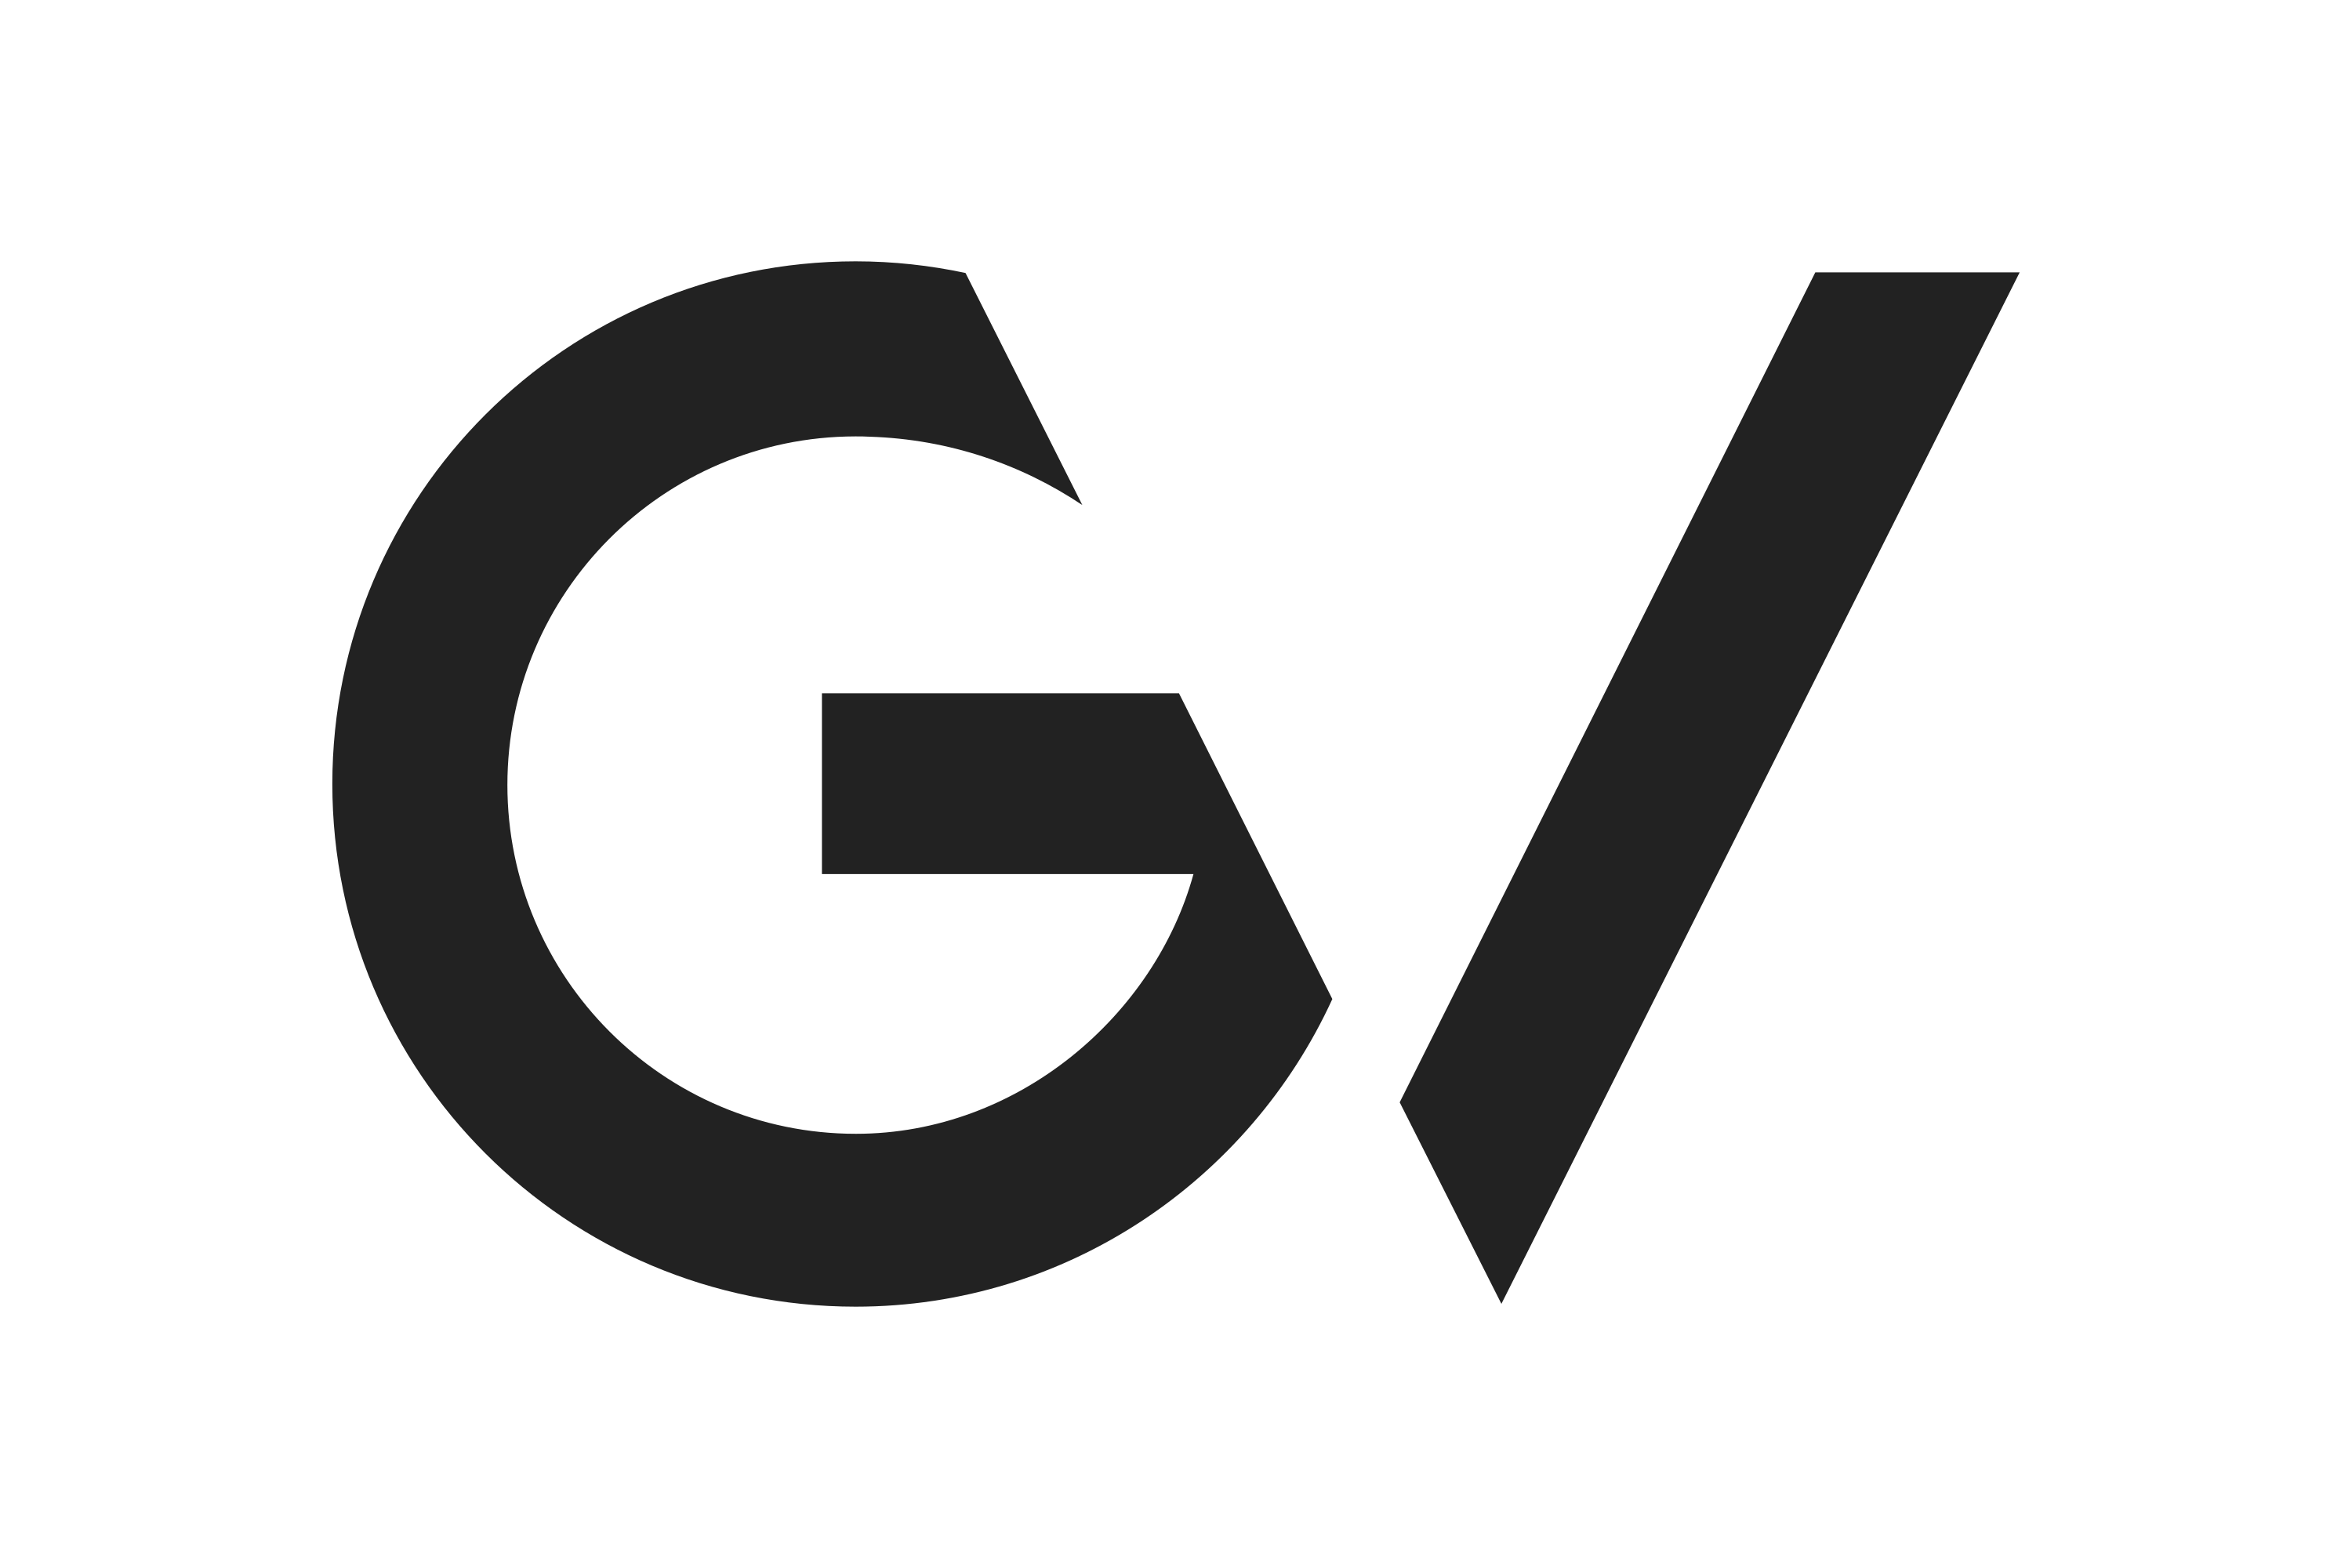 V c г с. Буква g логотип. Дизайн буквы g. Стилизованная буква g. Современные логотипы.